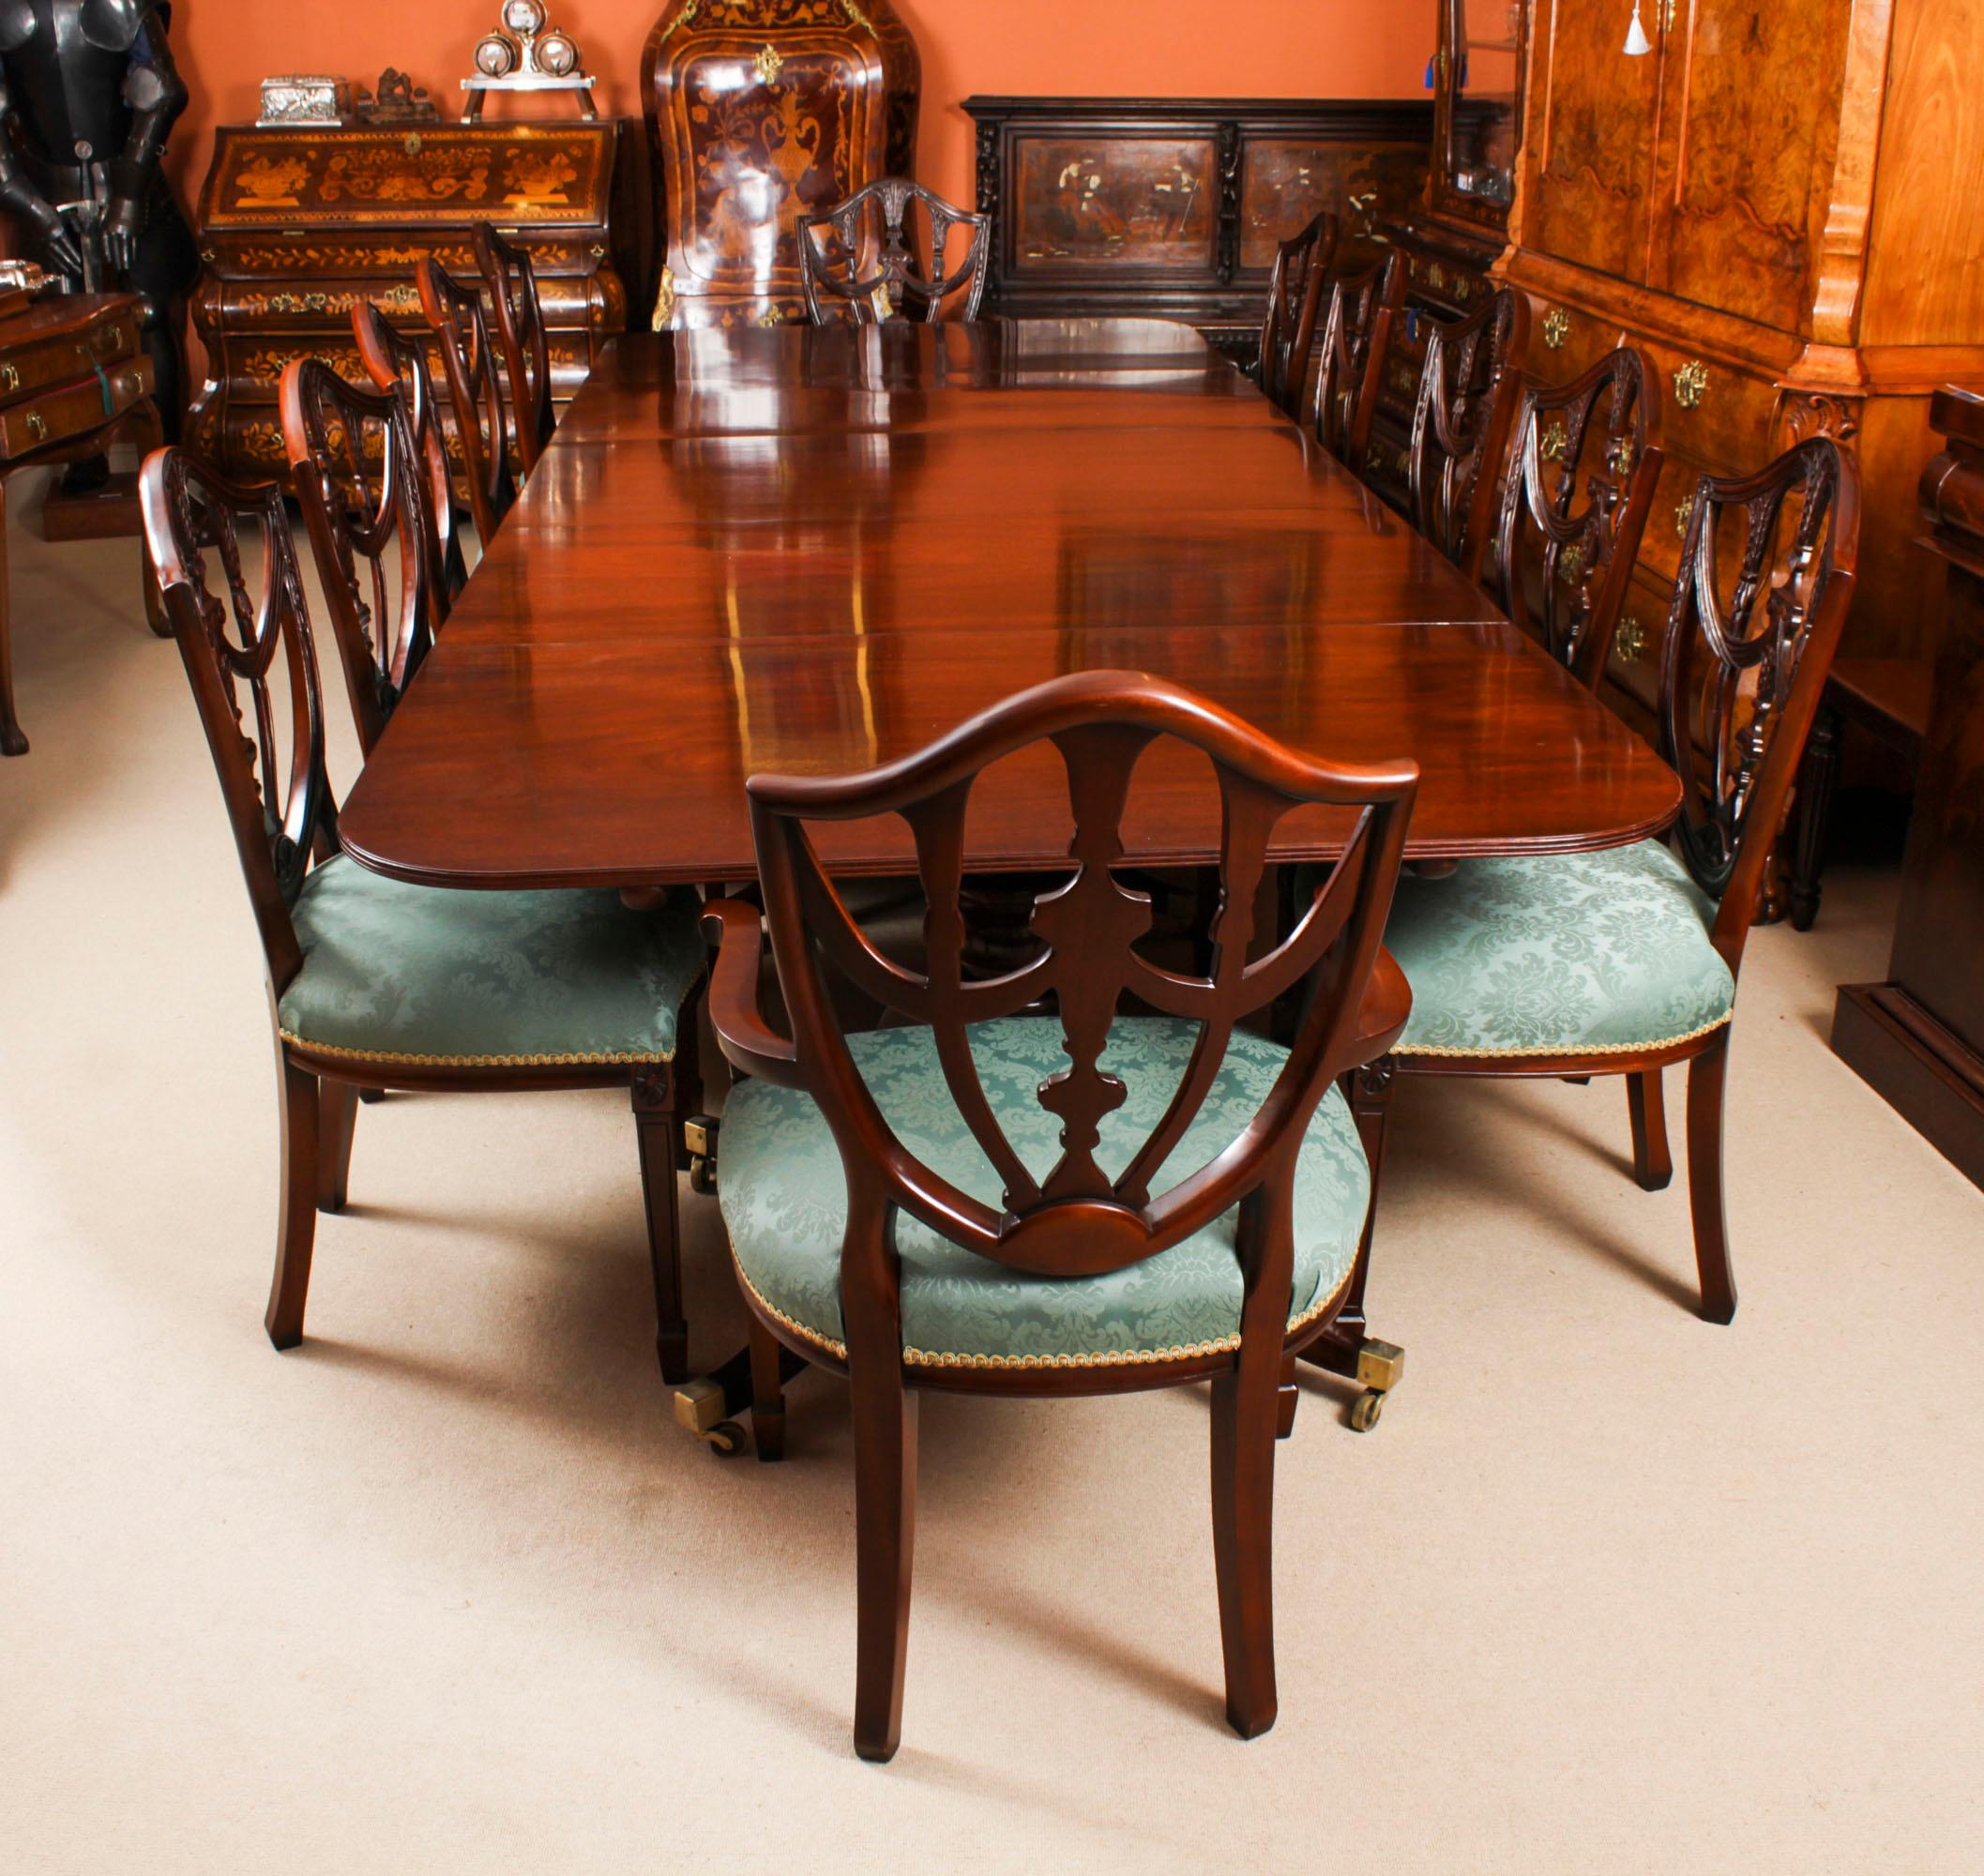 Es handelt sich um einen eleganten antiken Regency-Esstisch aus der Zeit um 1820 und zwölf Federal-Revival-Esszimmerstühle mit Schildrücken aus der Mitte des 20.

Der Tisch zeichnet sich durch elegante Schlichtheit aus, mit geraden, ungebrochenen